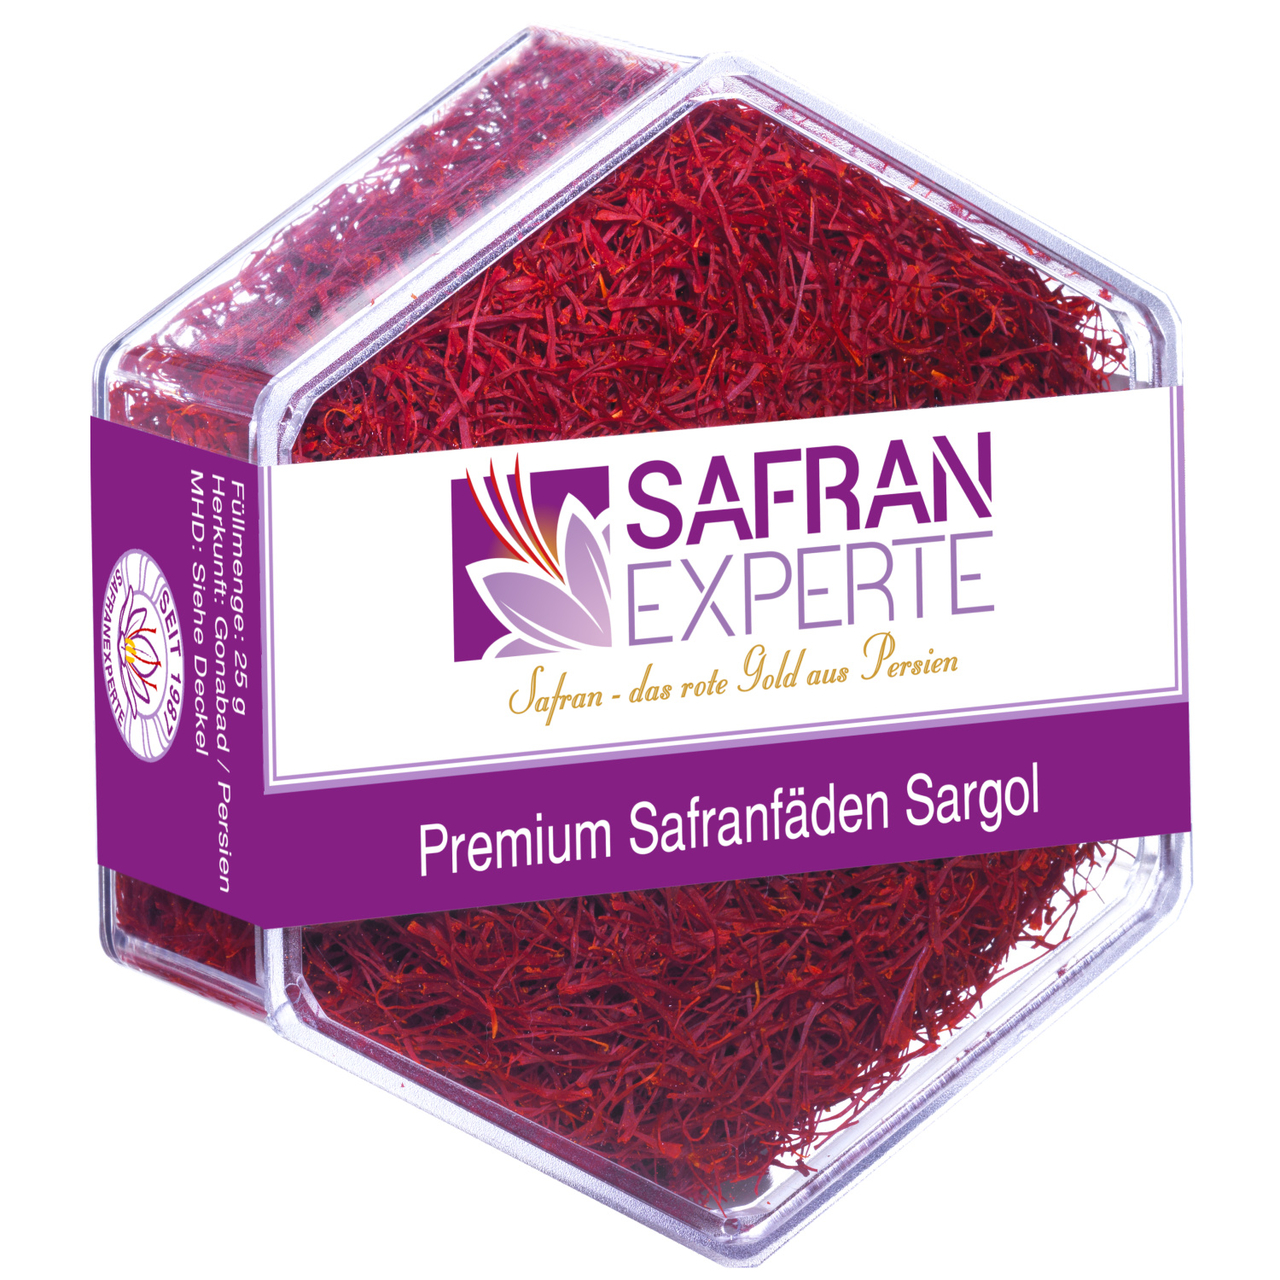 Buy saffron online Order the best saffron here